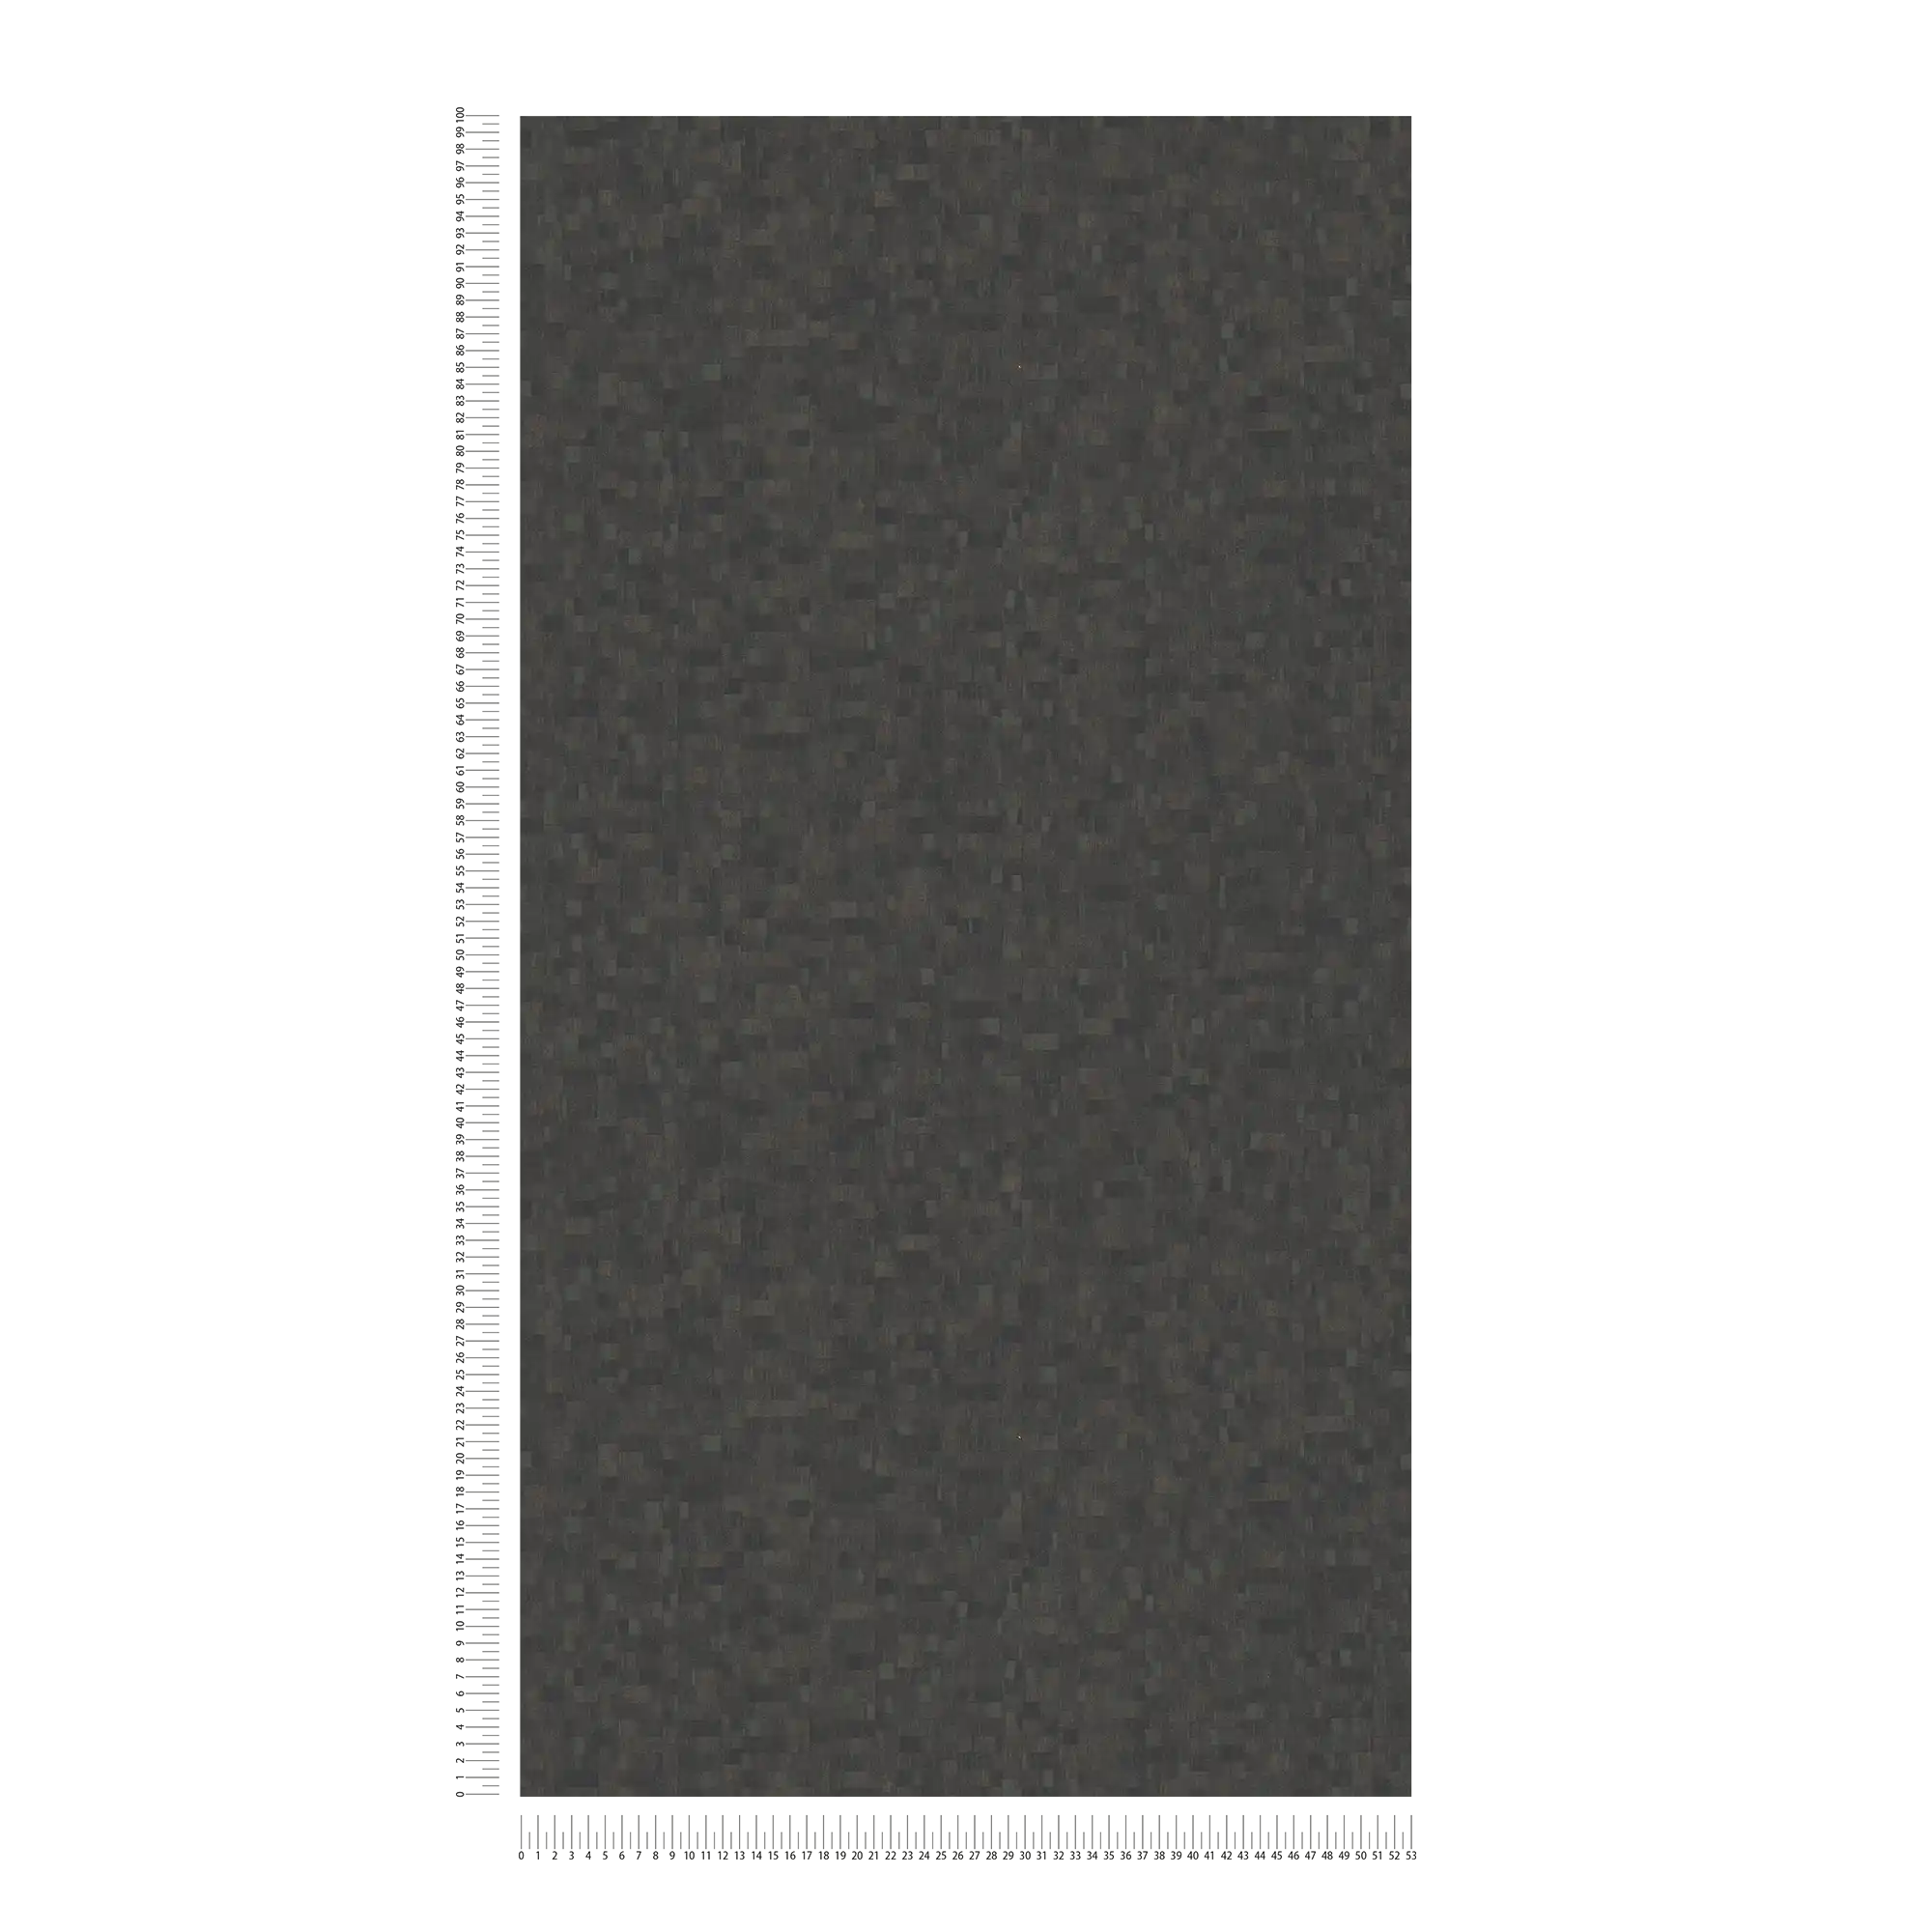             Carta da parati in tessuto non tessuto con struttura ed effetto mosaico - marrone, nero
        